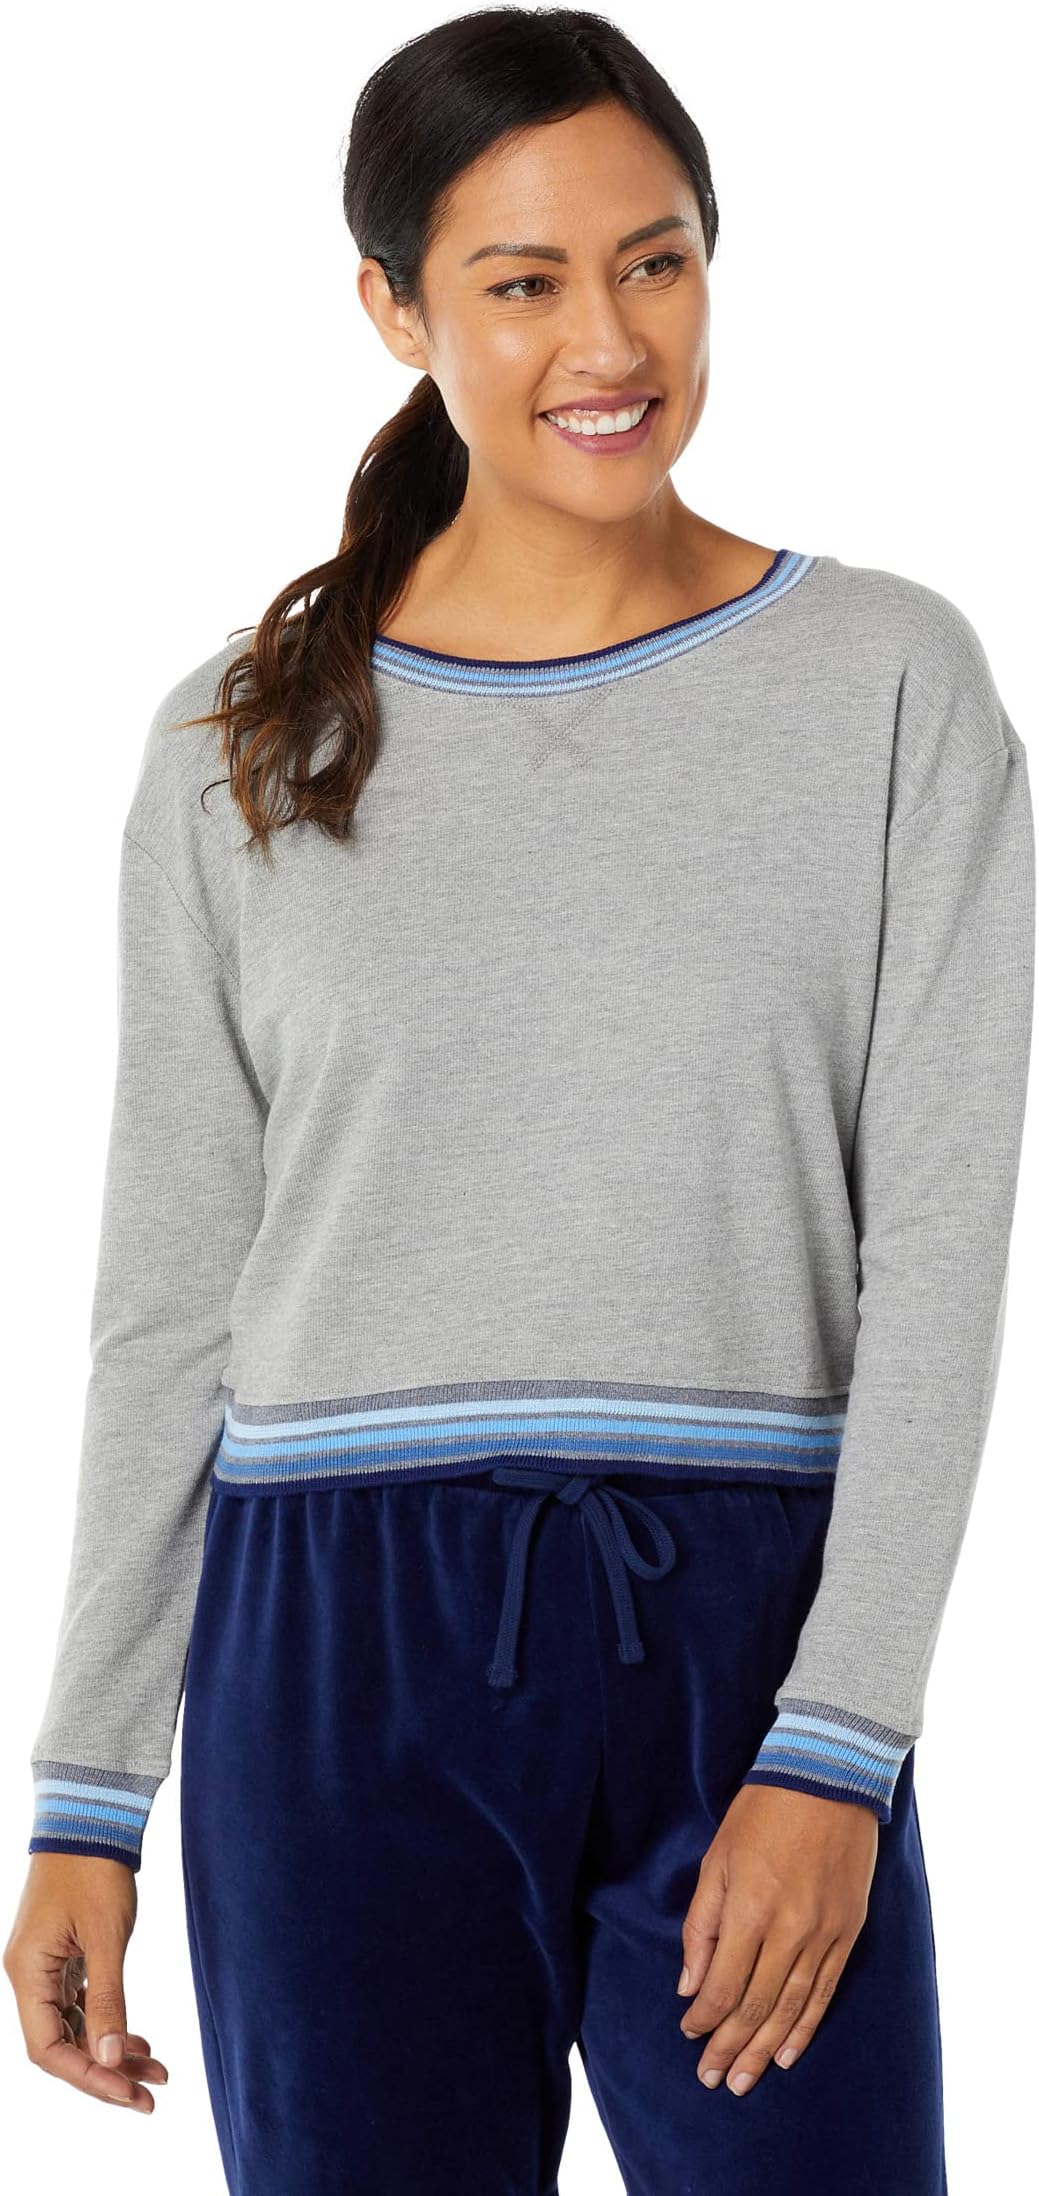 цена Пуловер с контрастной полосой Sundown Jada из махрового хлопка и модала Splendid, цвет Heather Charcoal